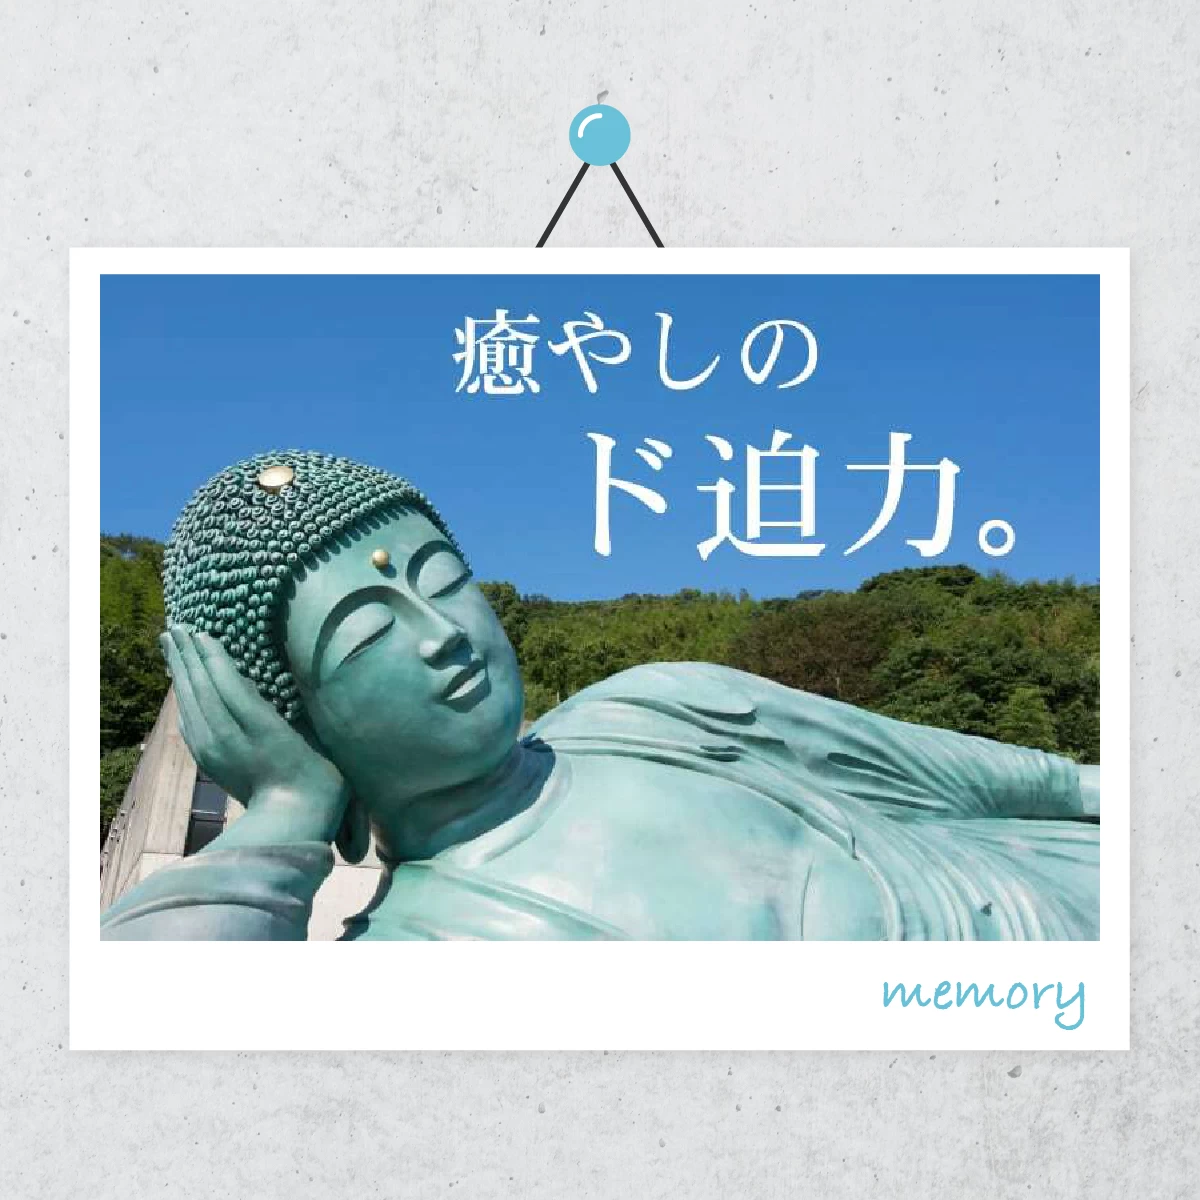 世界最大の涅槃像を見学  友達と福岡の南蔵院へ    